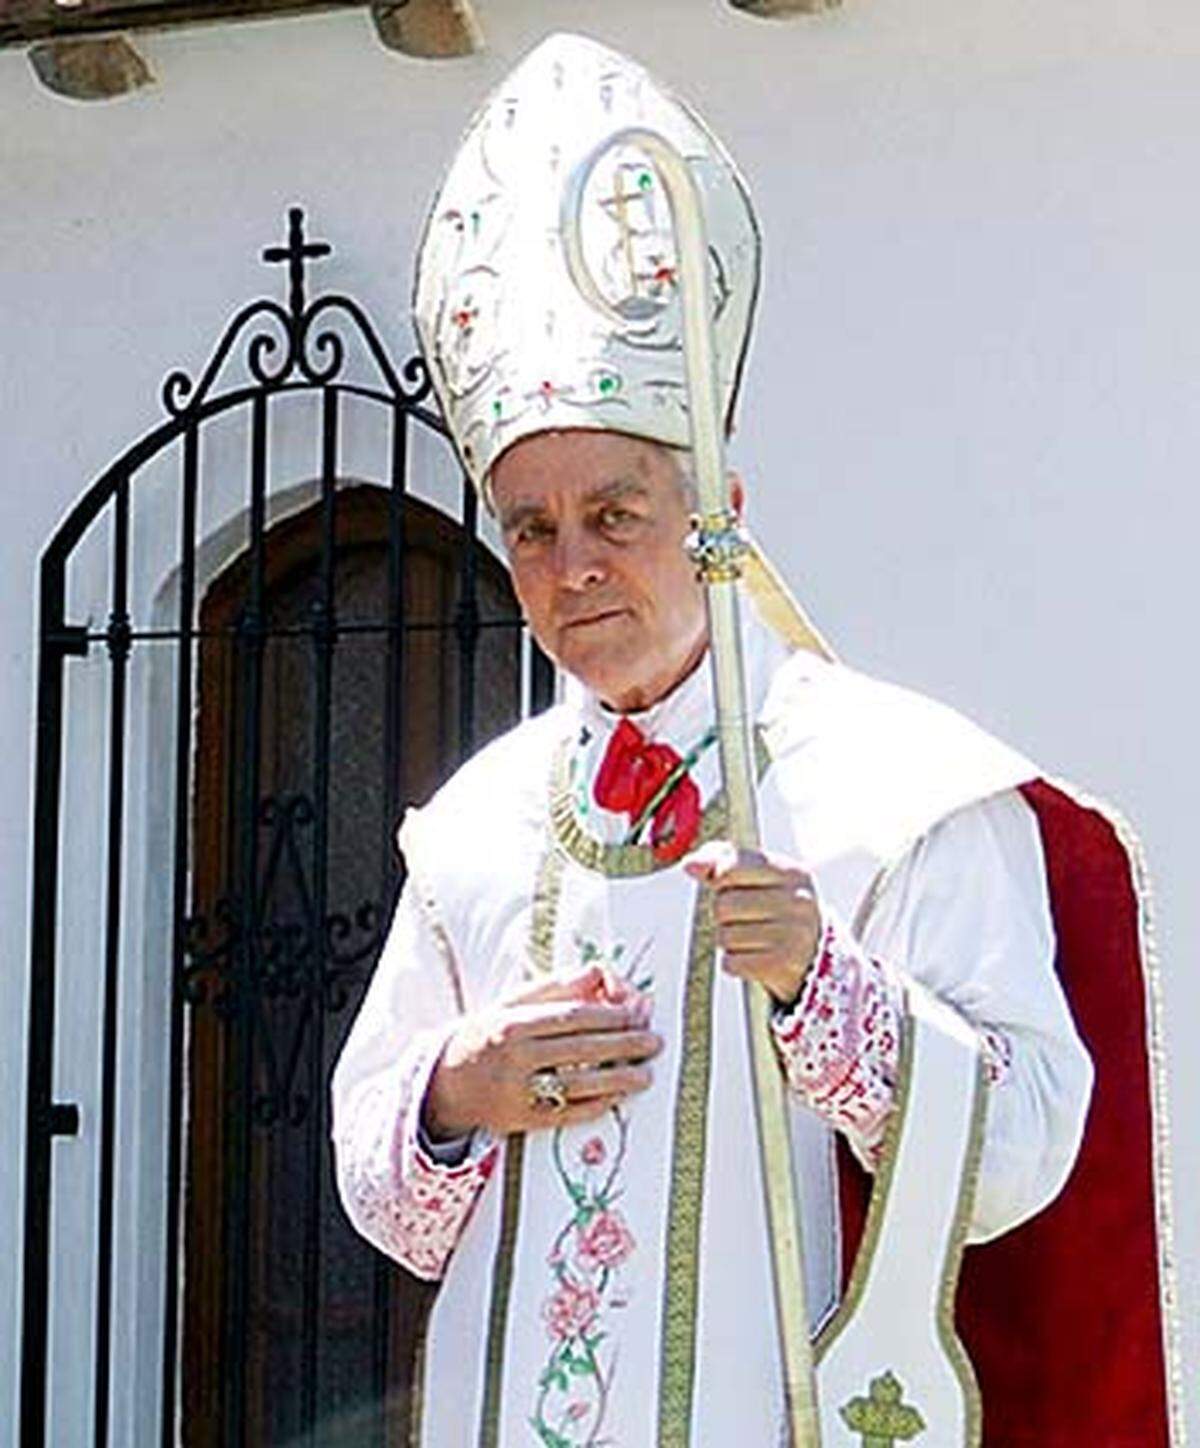 Am 4. Februar rief der Vatikan Williamson dazu auf, seine "absolut unakzeptablen Positionen" aufzugeben. Dieser Aufforderung hat Williamson erst Wochen später Folge geleistet.